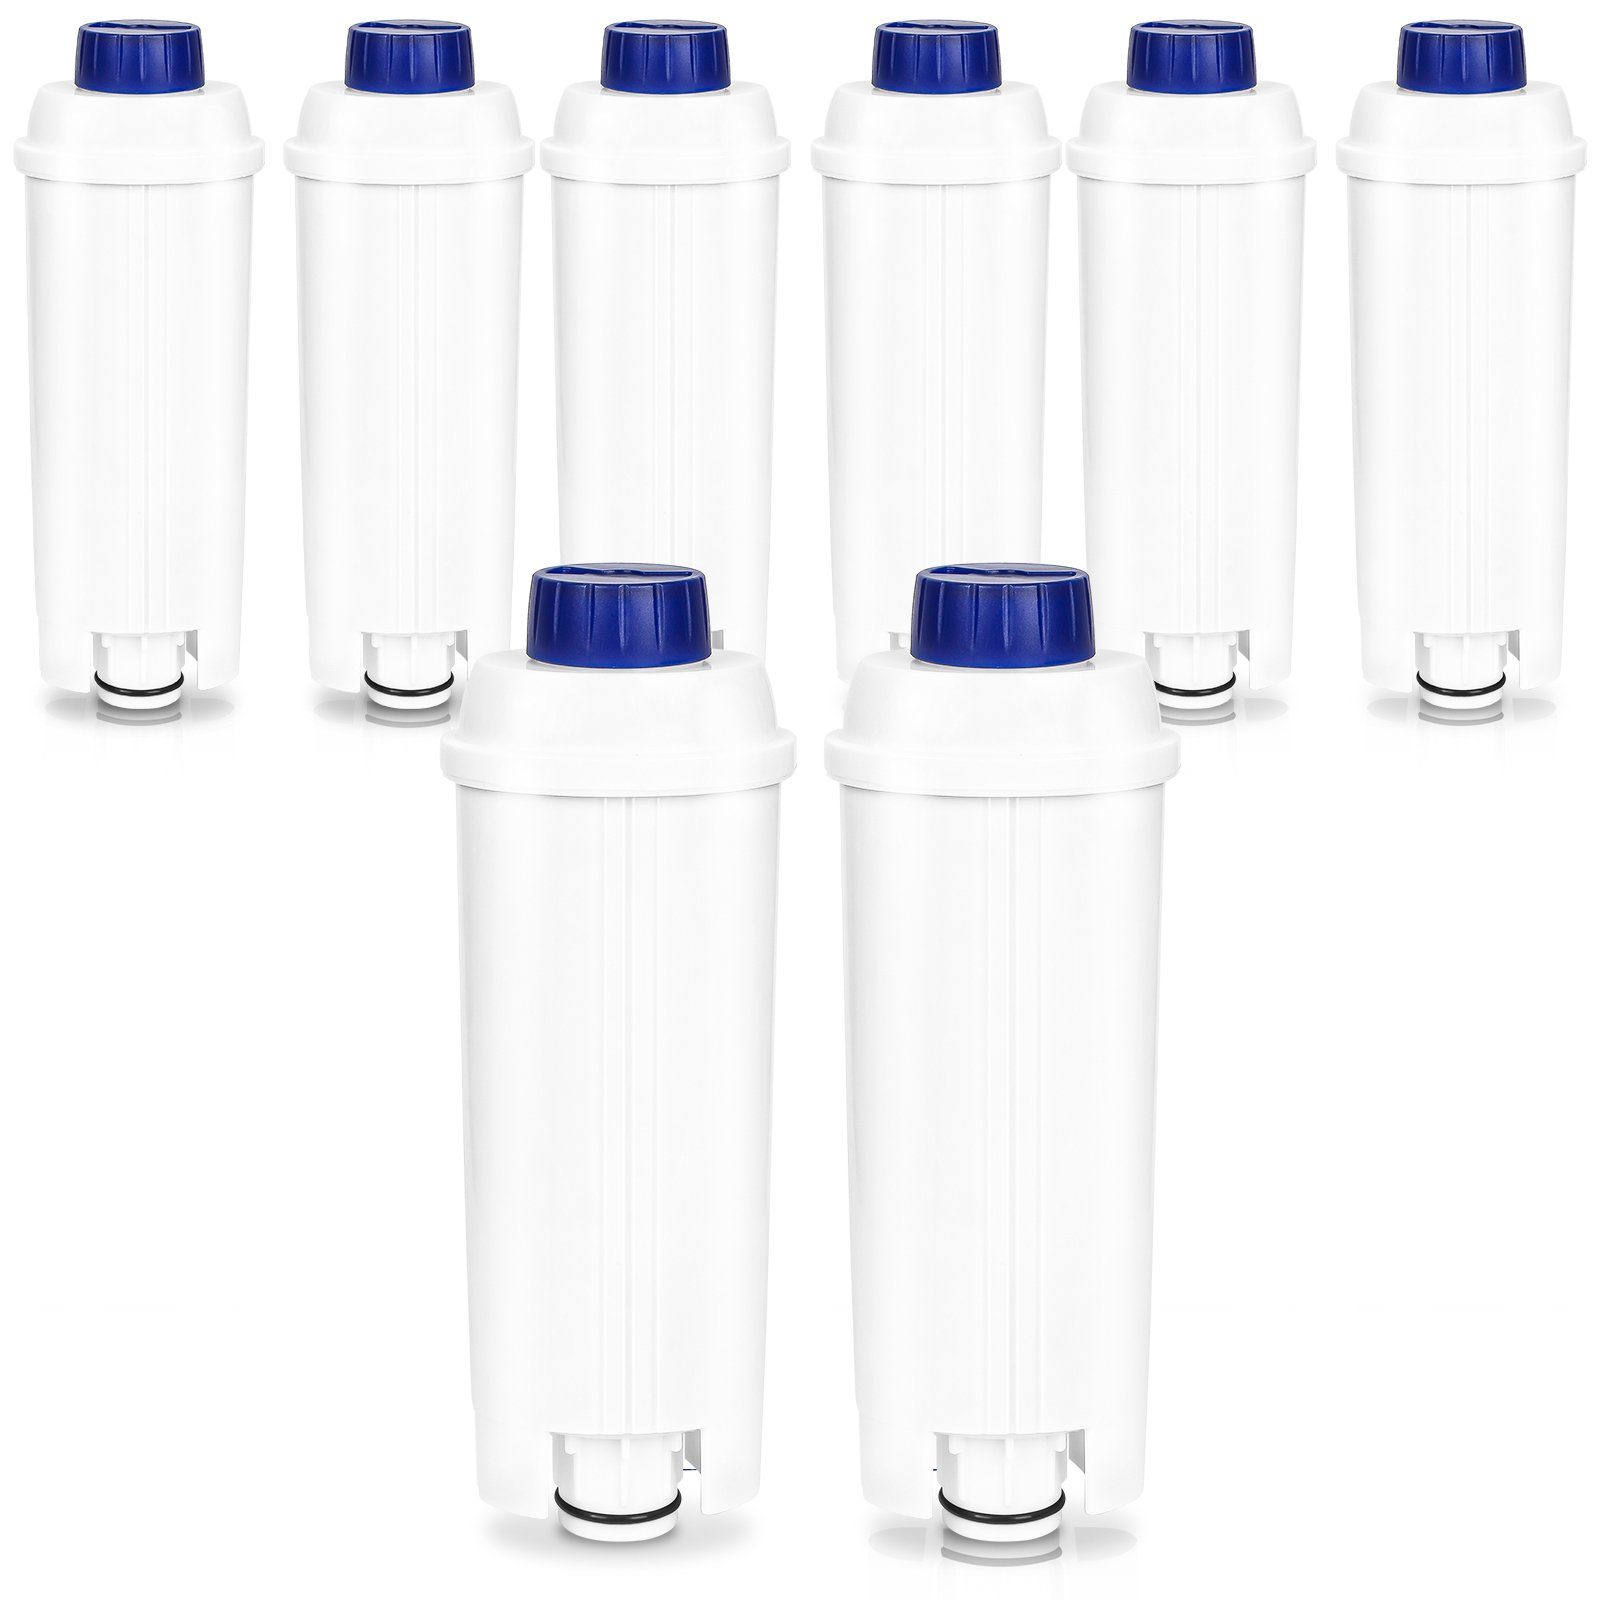 DLSC002 Lospitch Wasserfilter für Kaffeemaschine, 8er-Pack Wasserfilter Delonghi